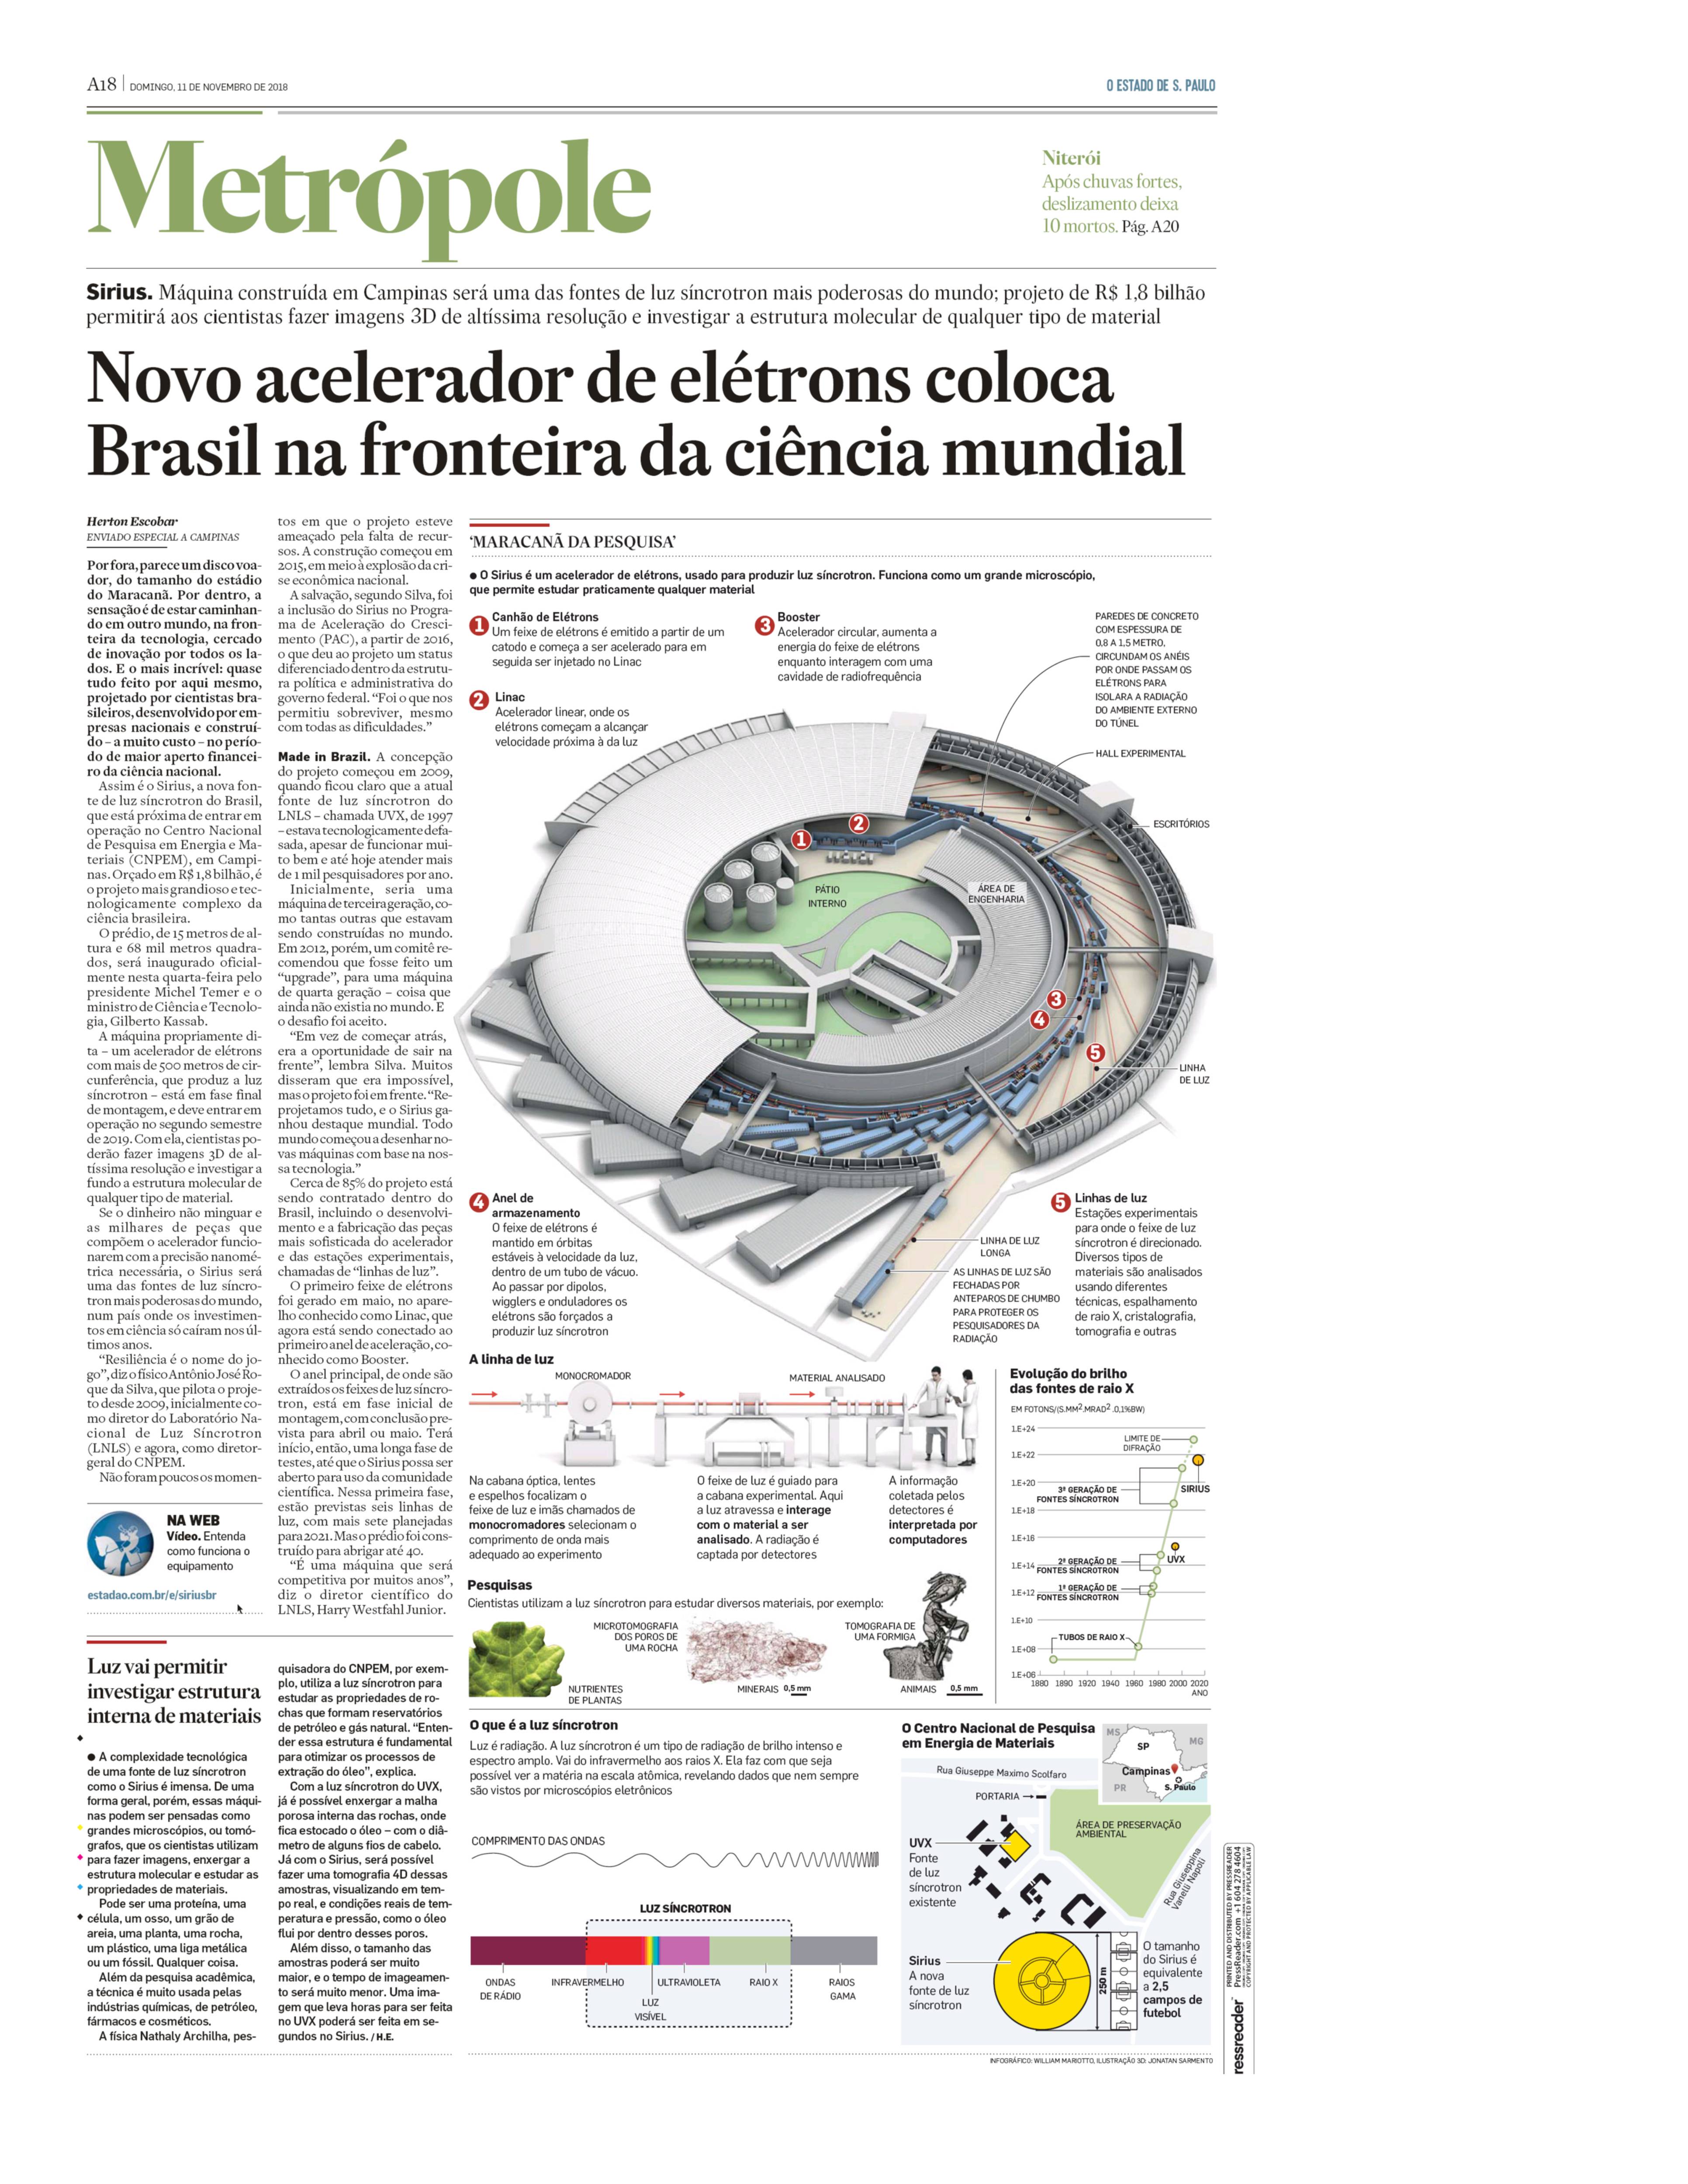 Novo acelerador de elétrons coloca Brasil na fronteira da ciência mundial